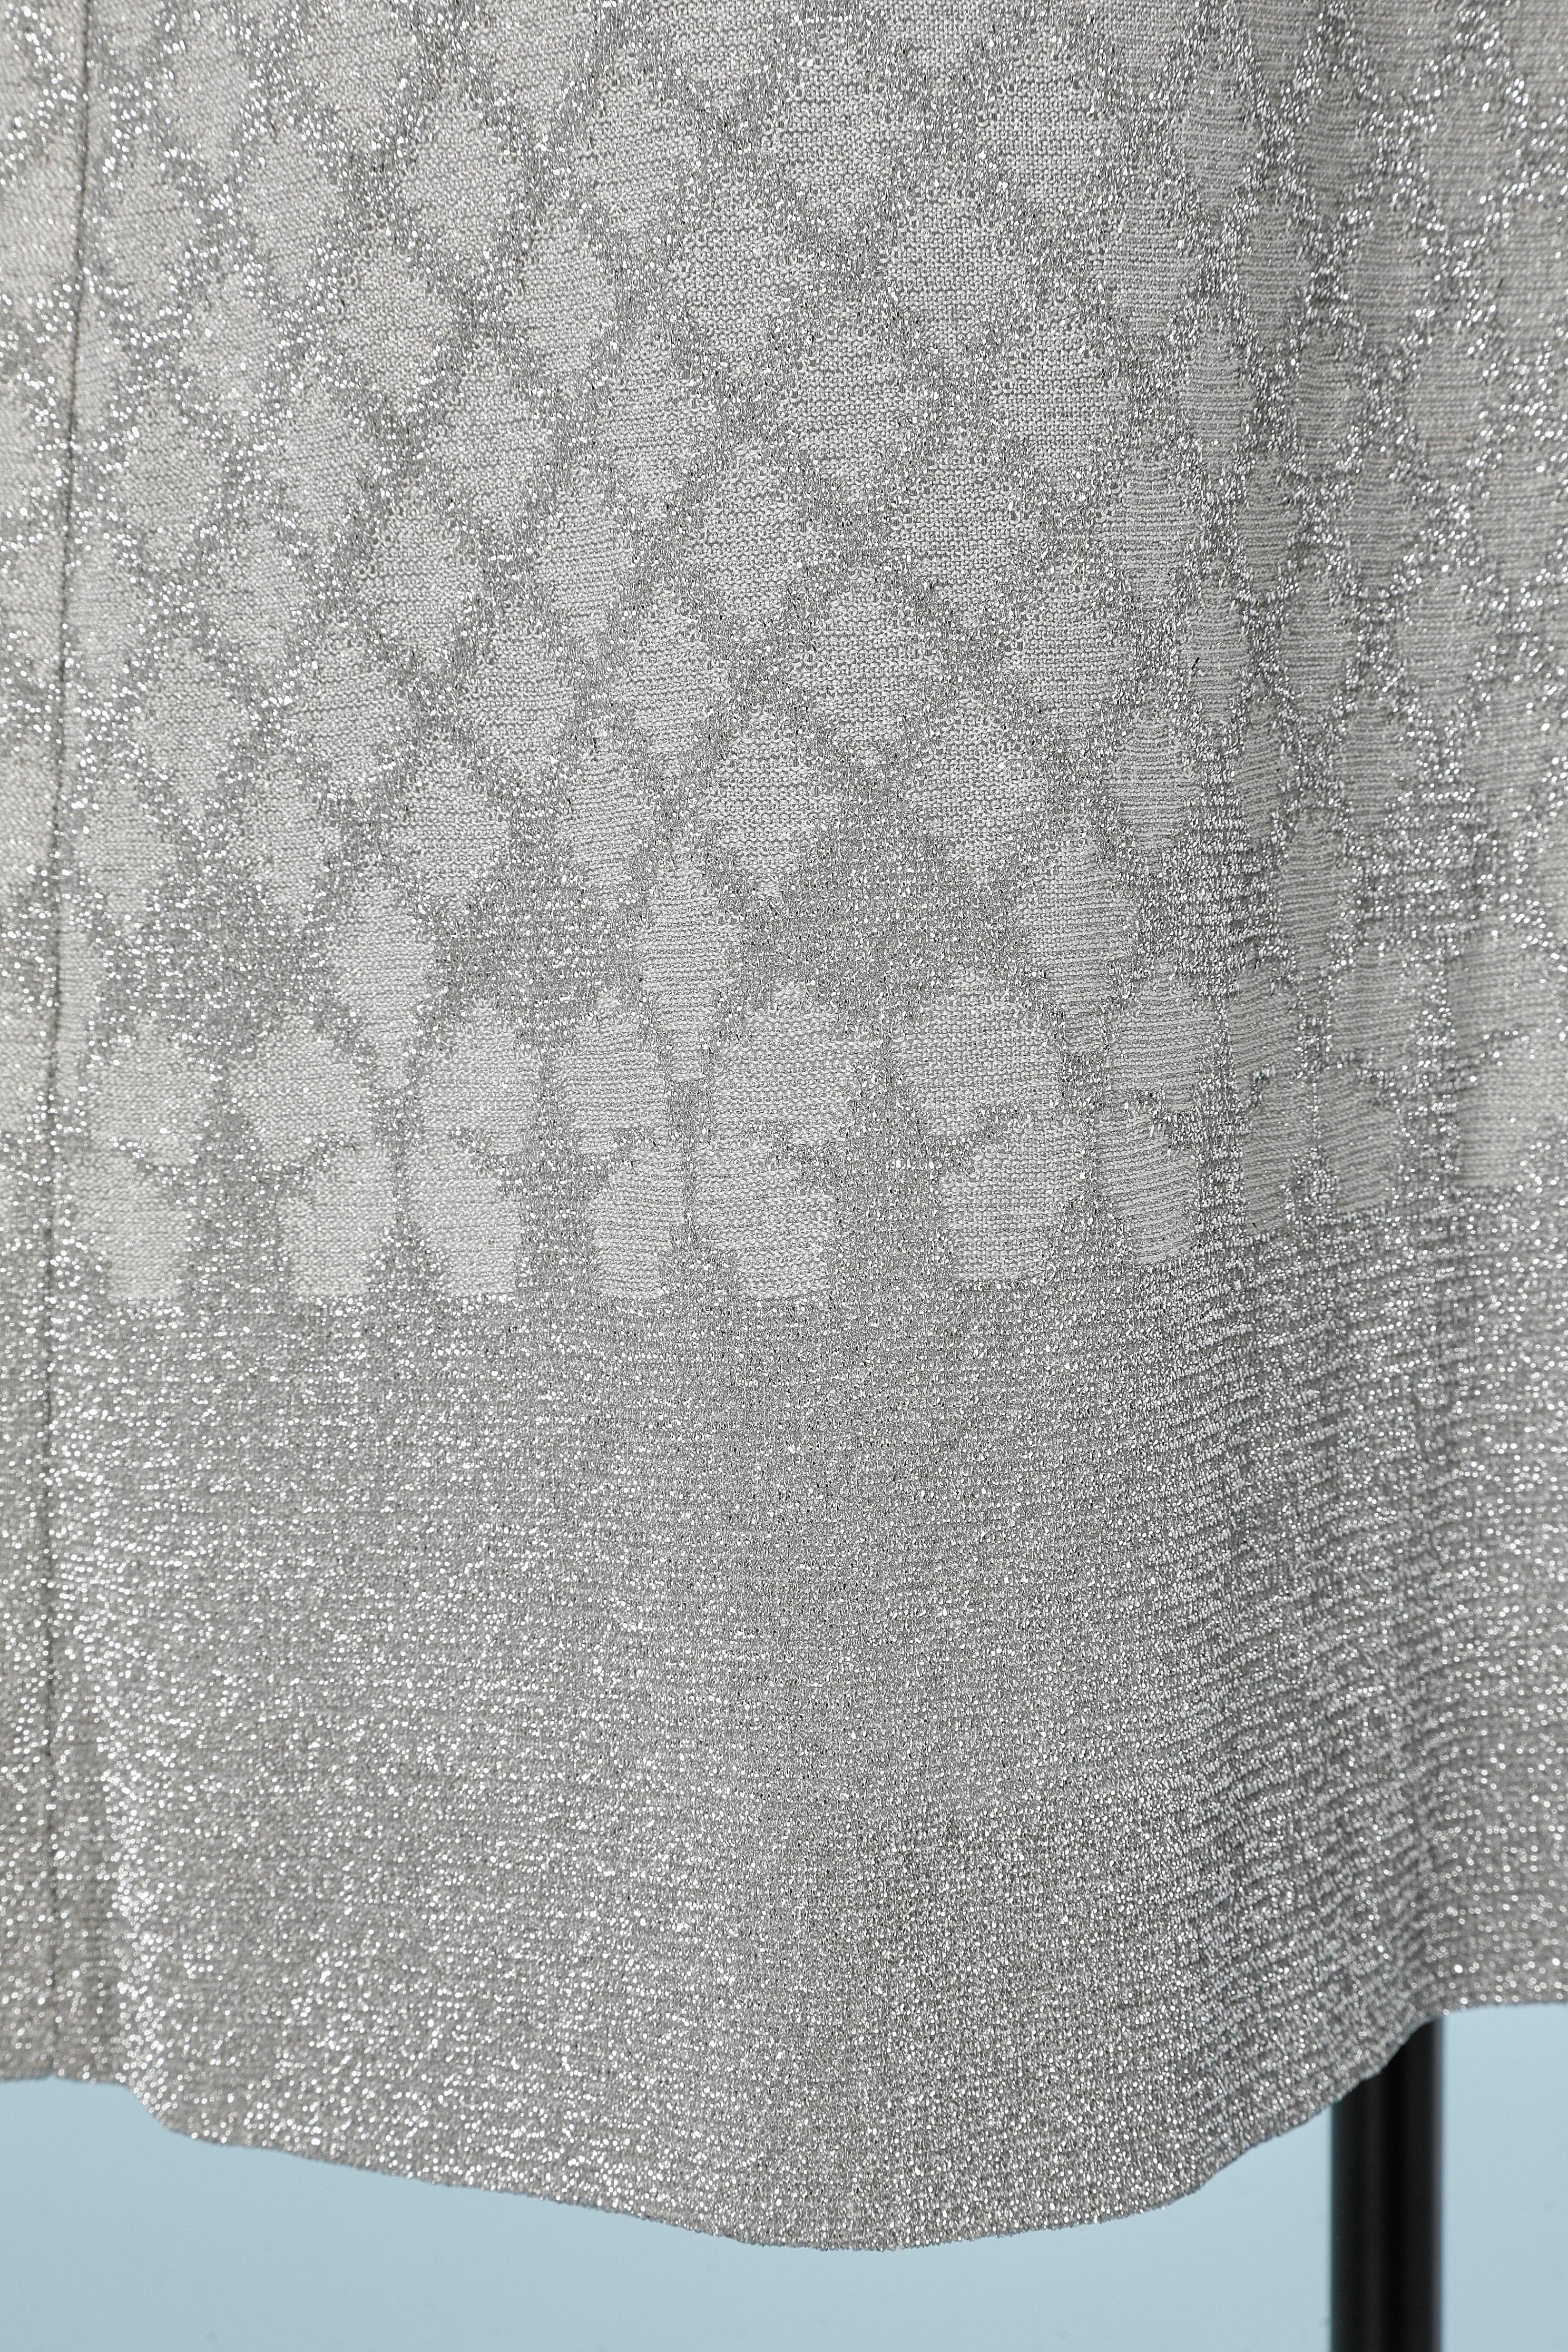 Silberner Lurex-Jersey ärmellos  Kleid mit Rautenmuster. 
Futter aus Polyester. 
GRÖSSE L